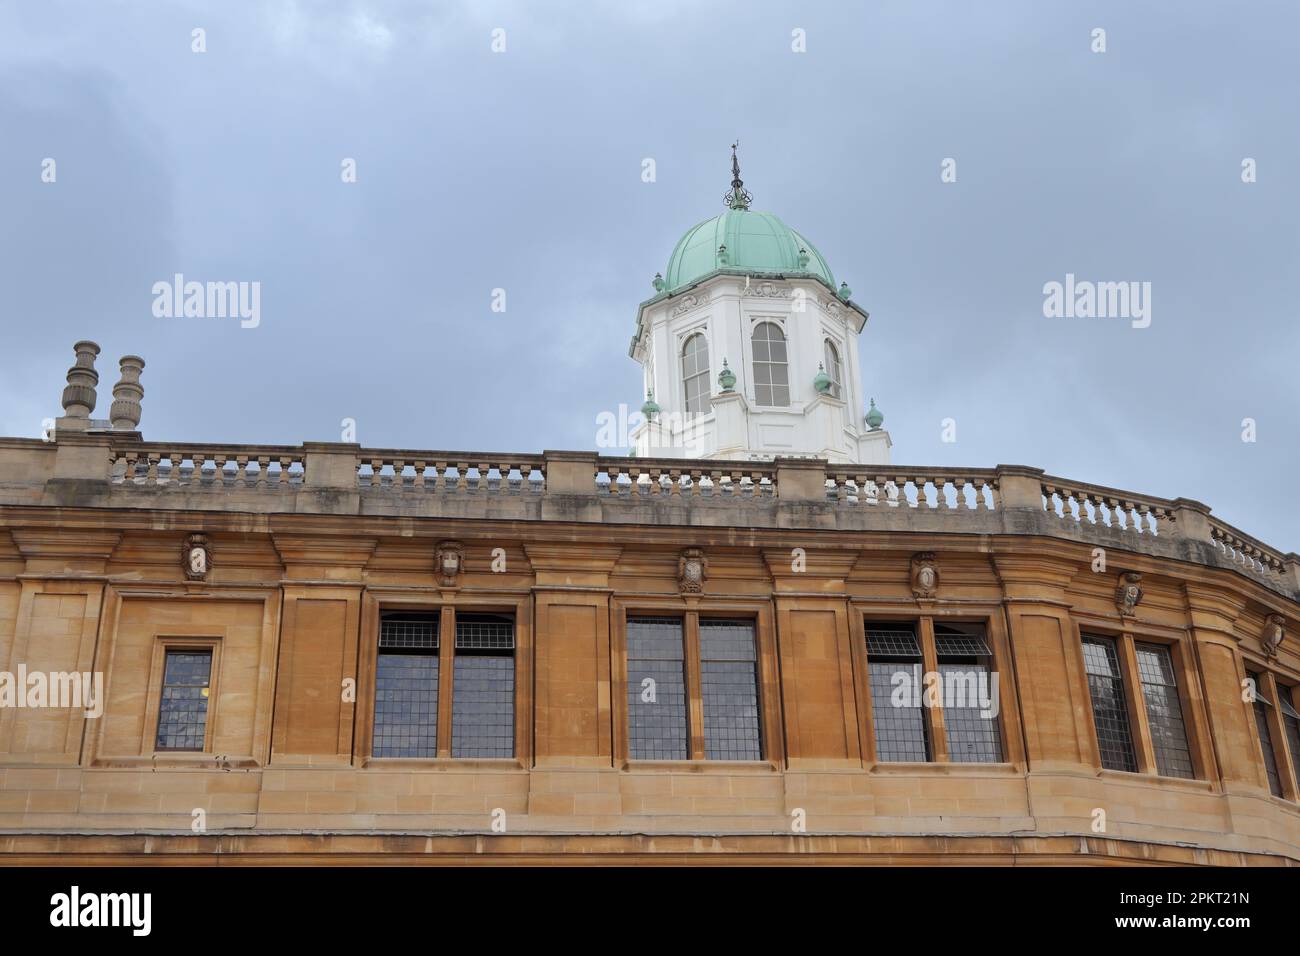 Sheldonian Theatre, utilisé pour des récitals musicaux, des conférences, des conférences et diverses cérémonies tenues par l'Université d'Oxford Banque D'Images